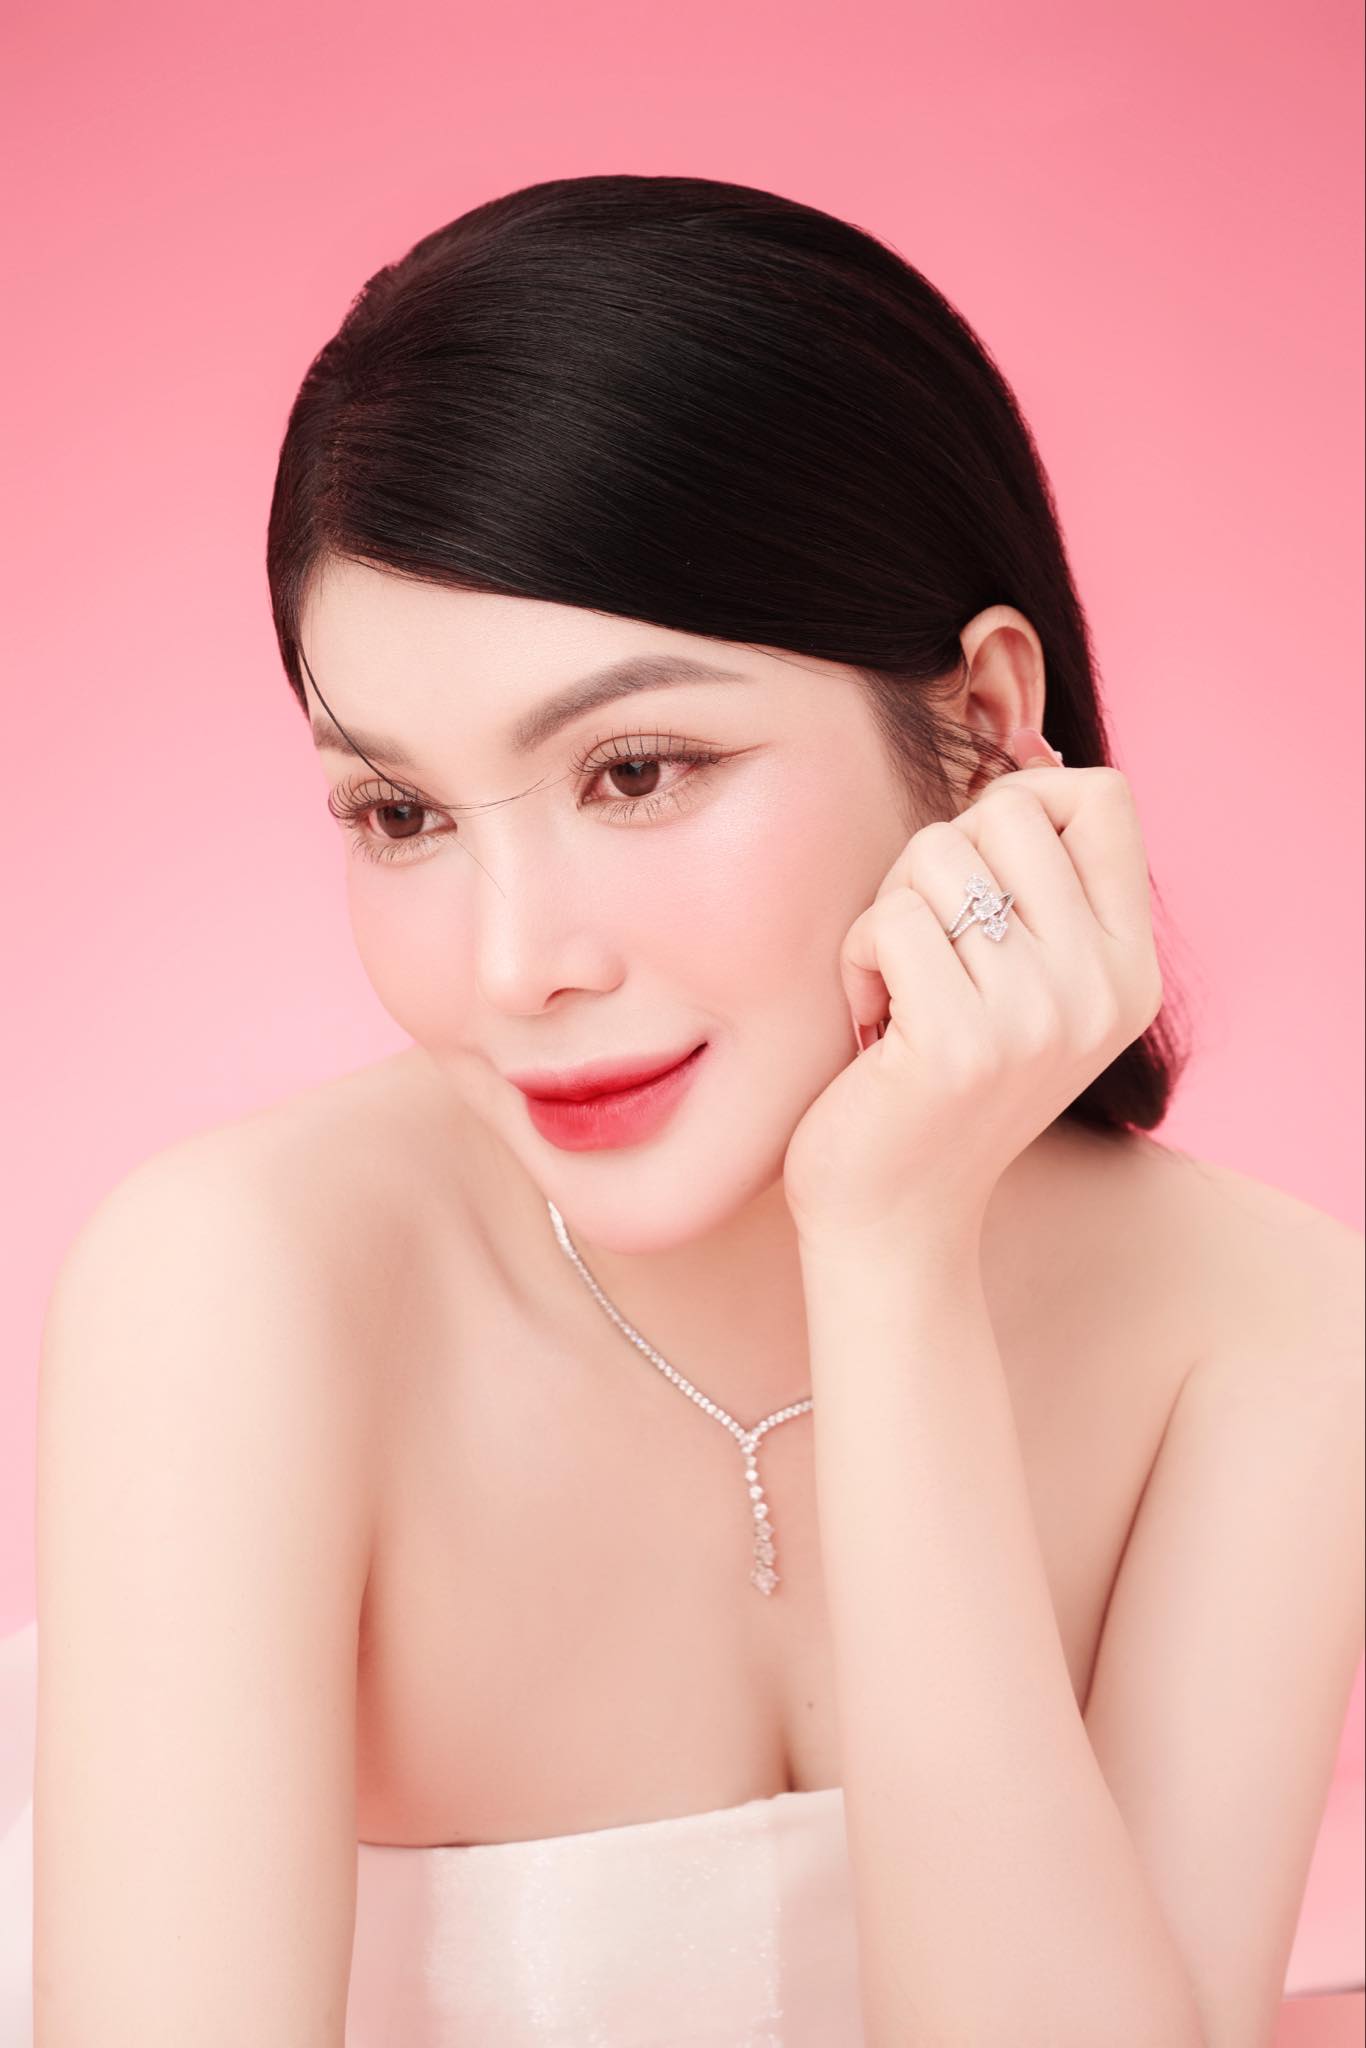 'Ngọc nữ bolero' Lily Chen khoe nhan sắc quyến rũ, lên chức bà chủ tuổi 29- Ảnh 4.